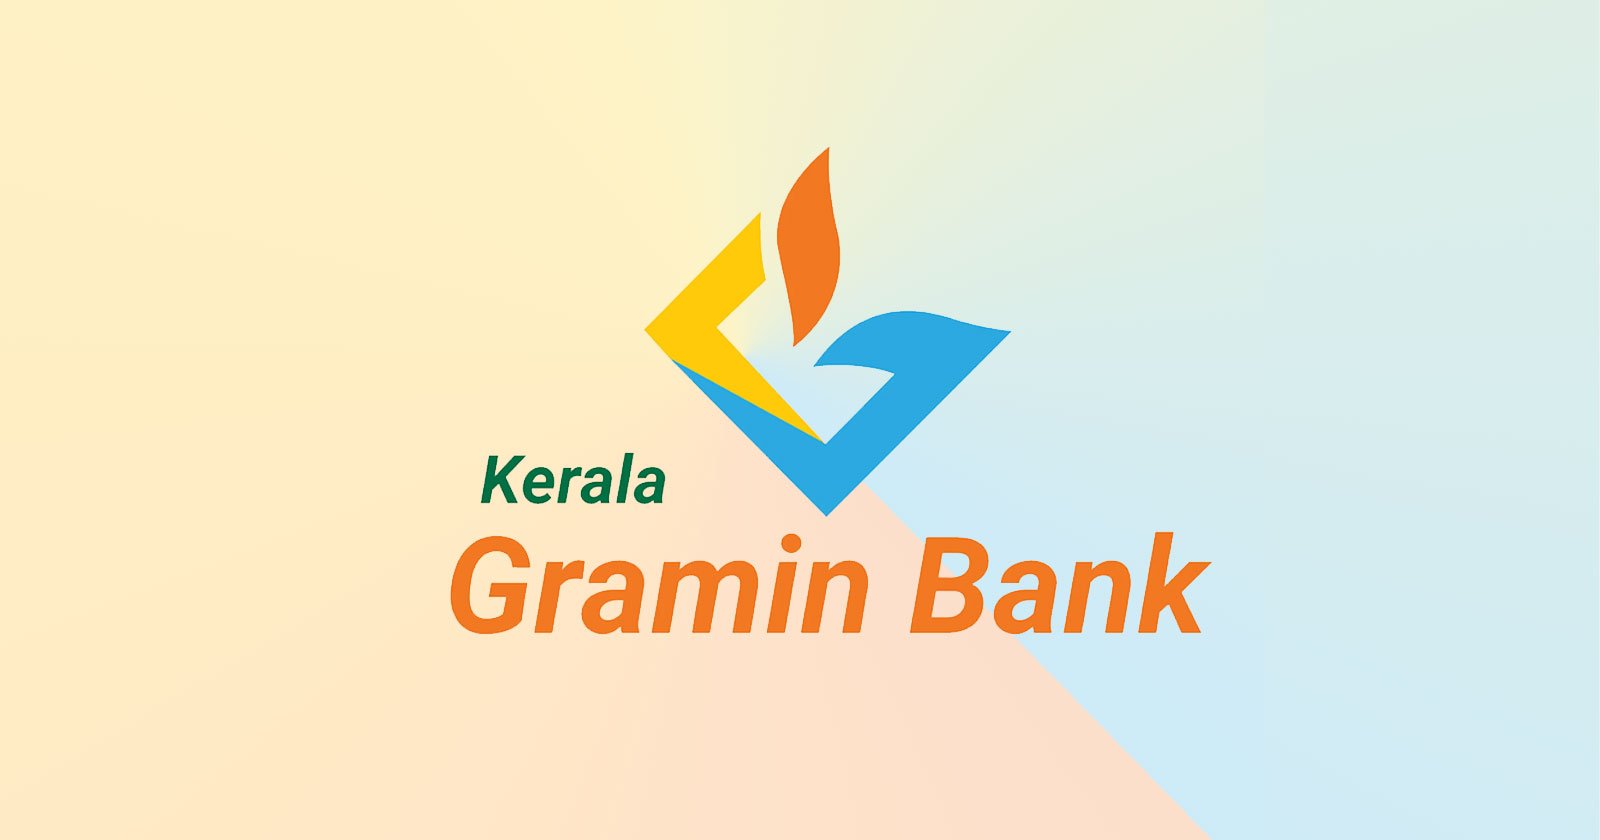 Utkal Grameen Bank